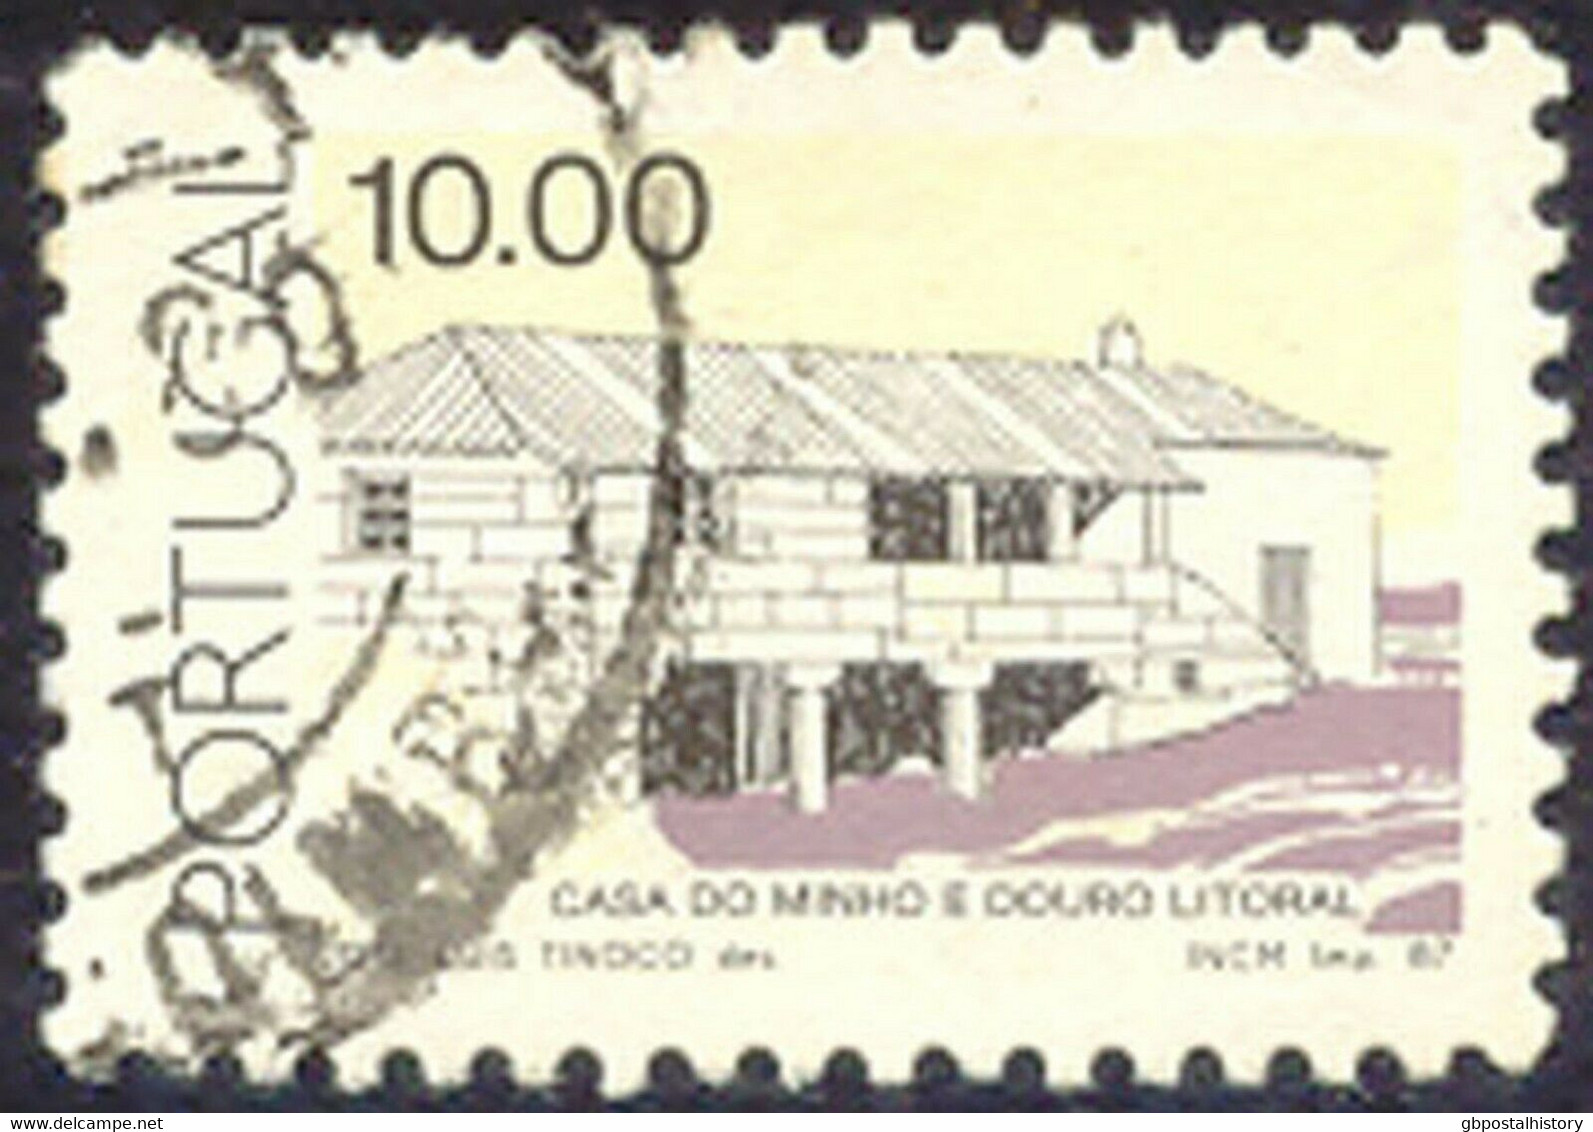 PORTUGAL 1987 10.00 (E.) Landhaus Minho Und Douro Litoral Gest. MISSING COLOUR - Gebraucht